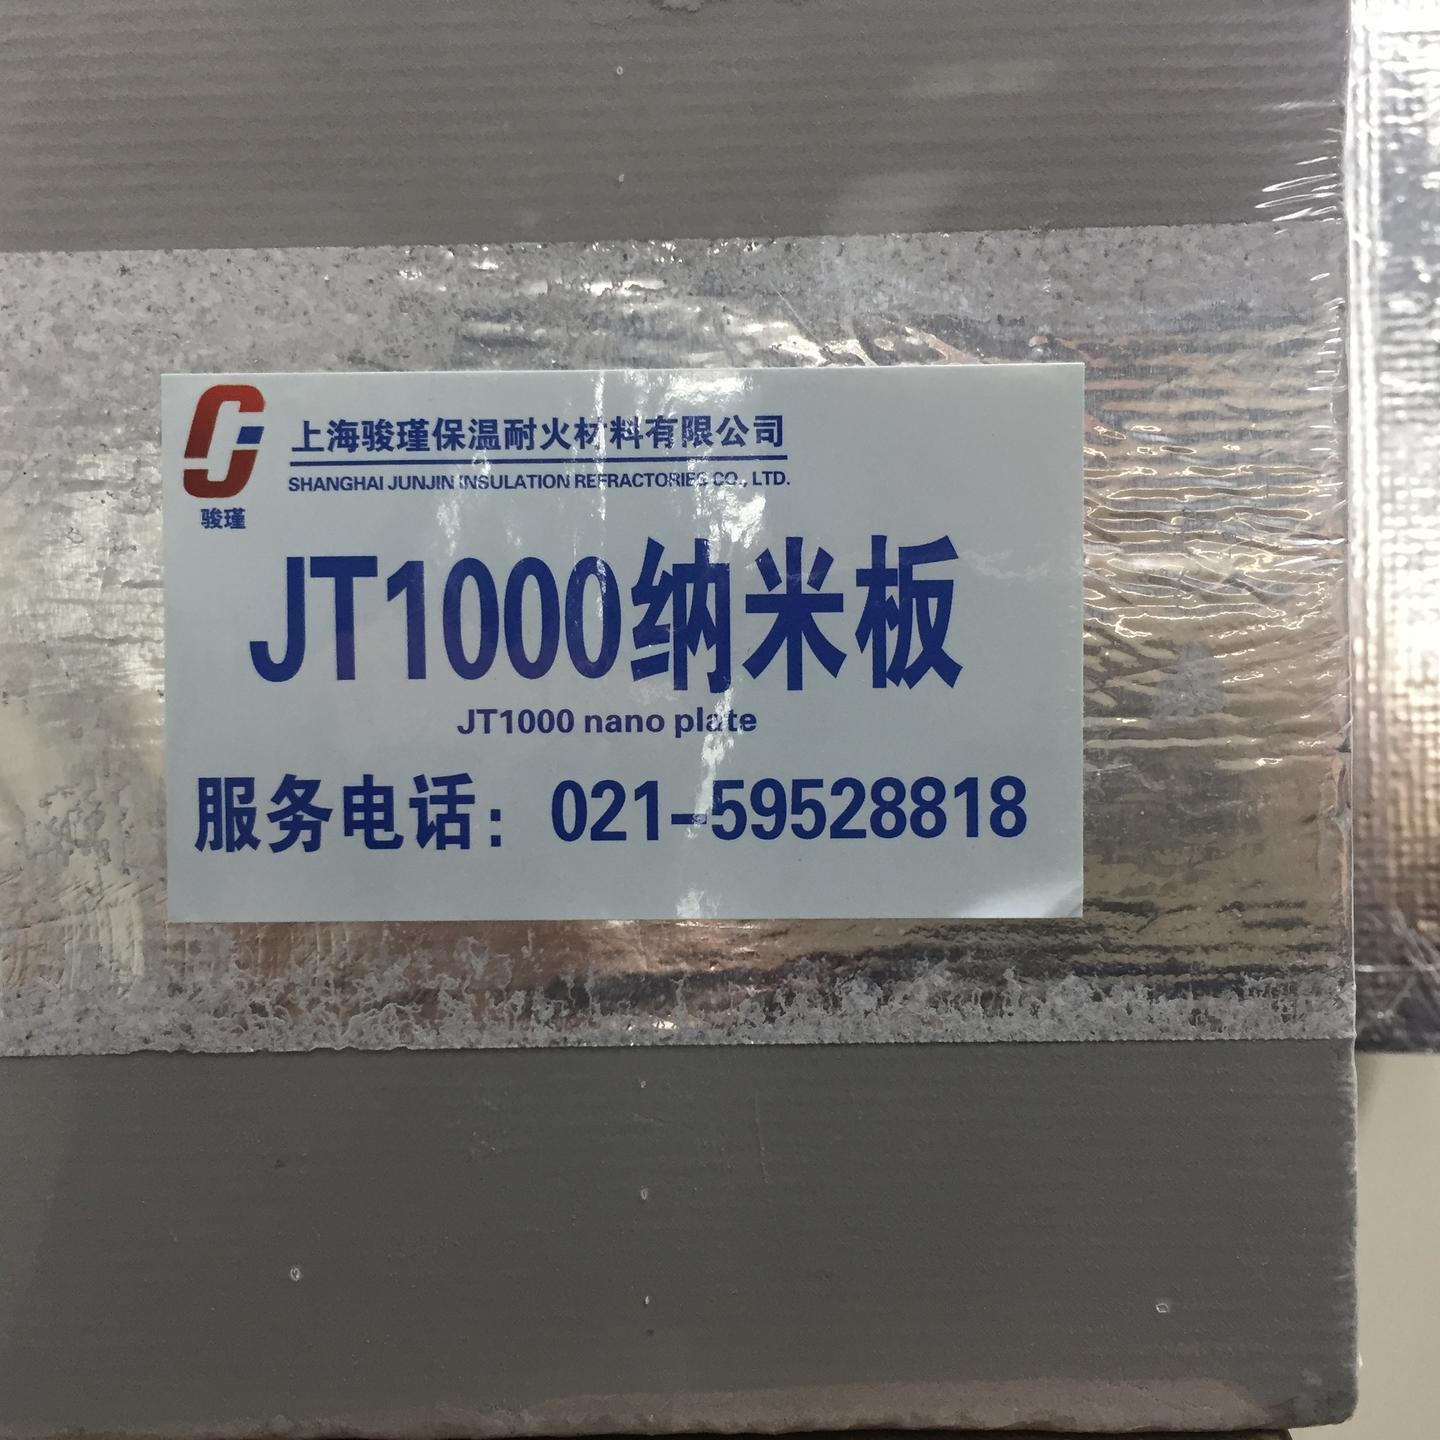 上海骏瑾厂家直销有色金属窑炉行业高性能纳米材料 窑炉  厂家上海  坚韧耐用